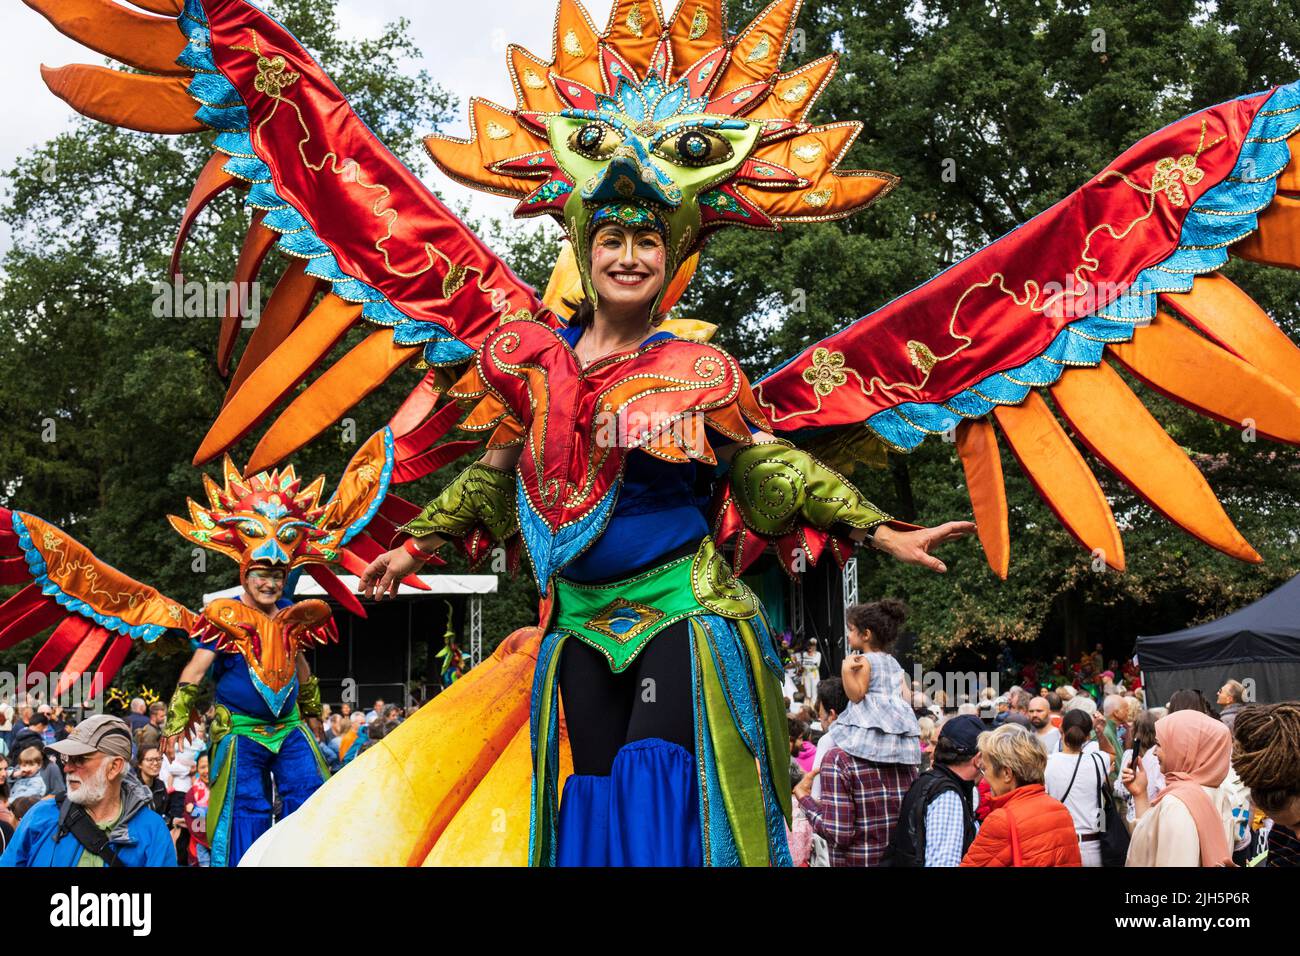 Carnaval de Brême avec costumes colorés, masques et rythmes de samba, Brême, Allemagne, Europe Banque D'Images